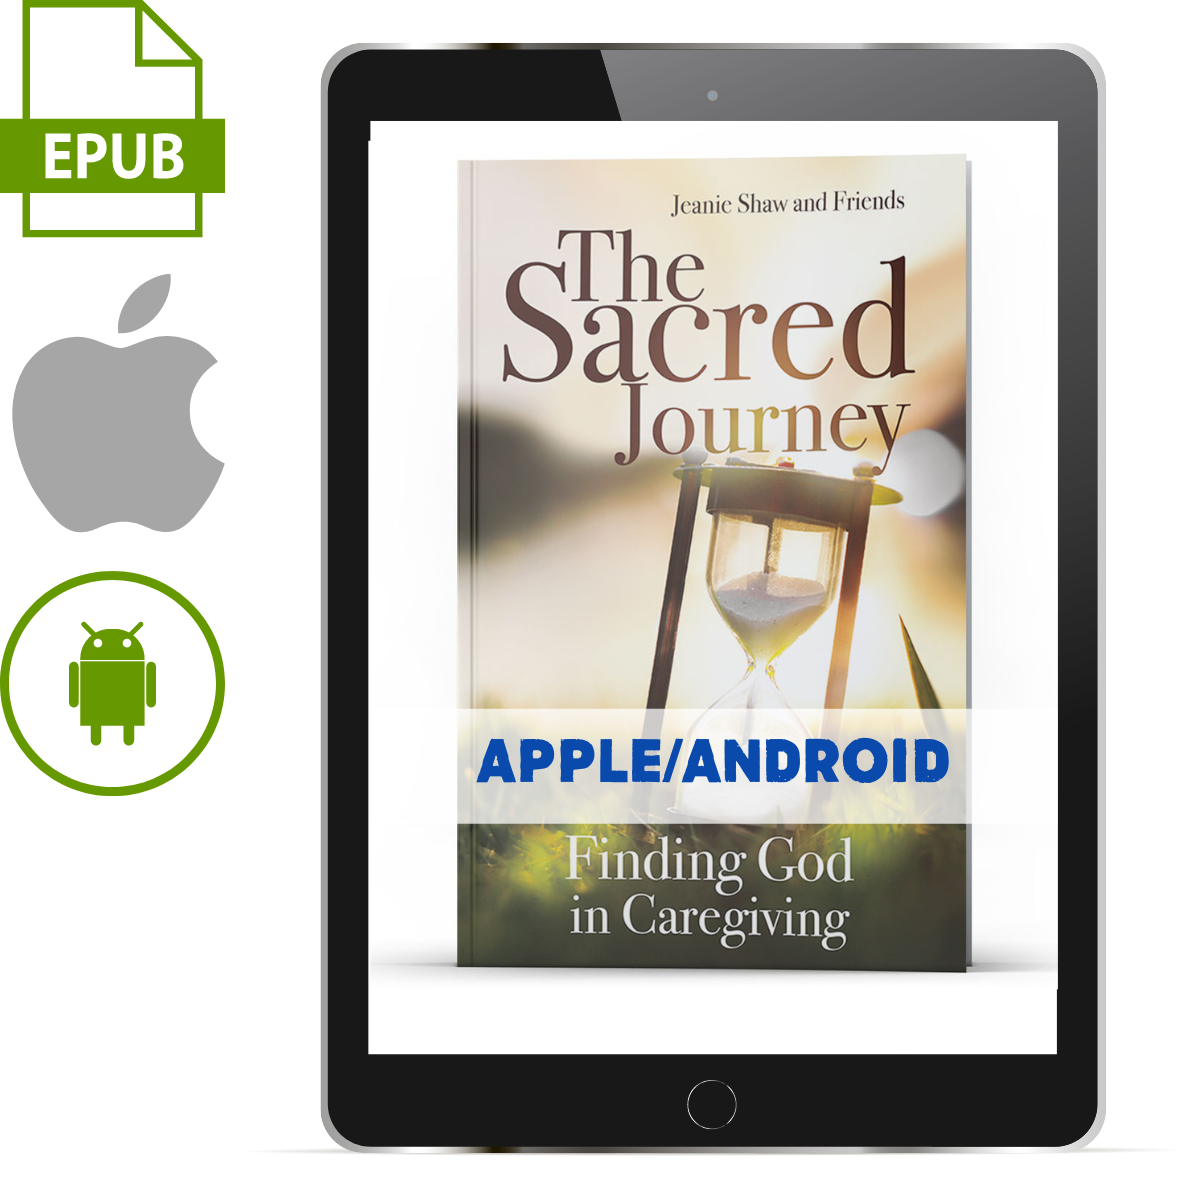 The Sacred Journey Apple/Android ePub - Illumination Publishers